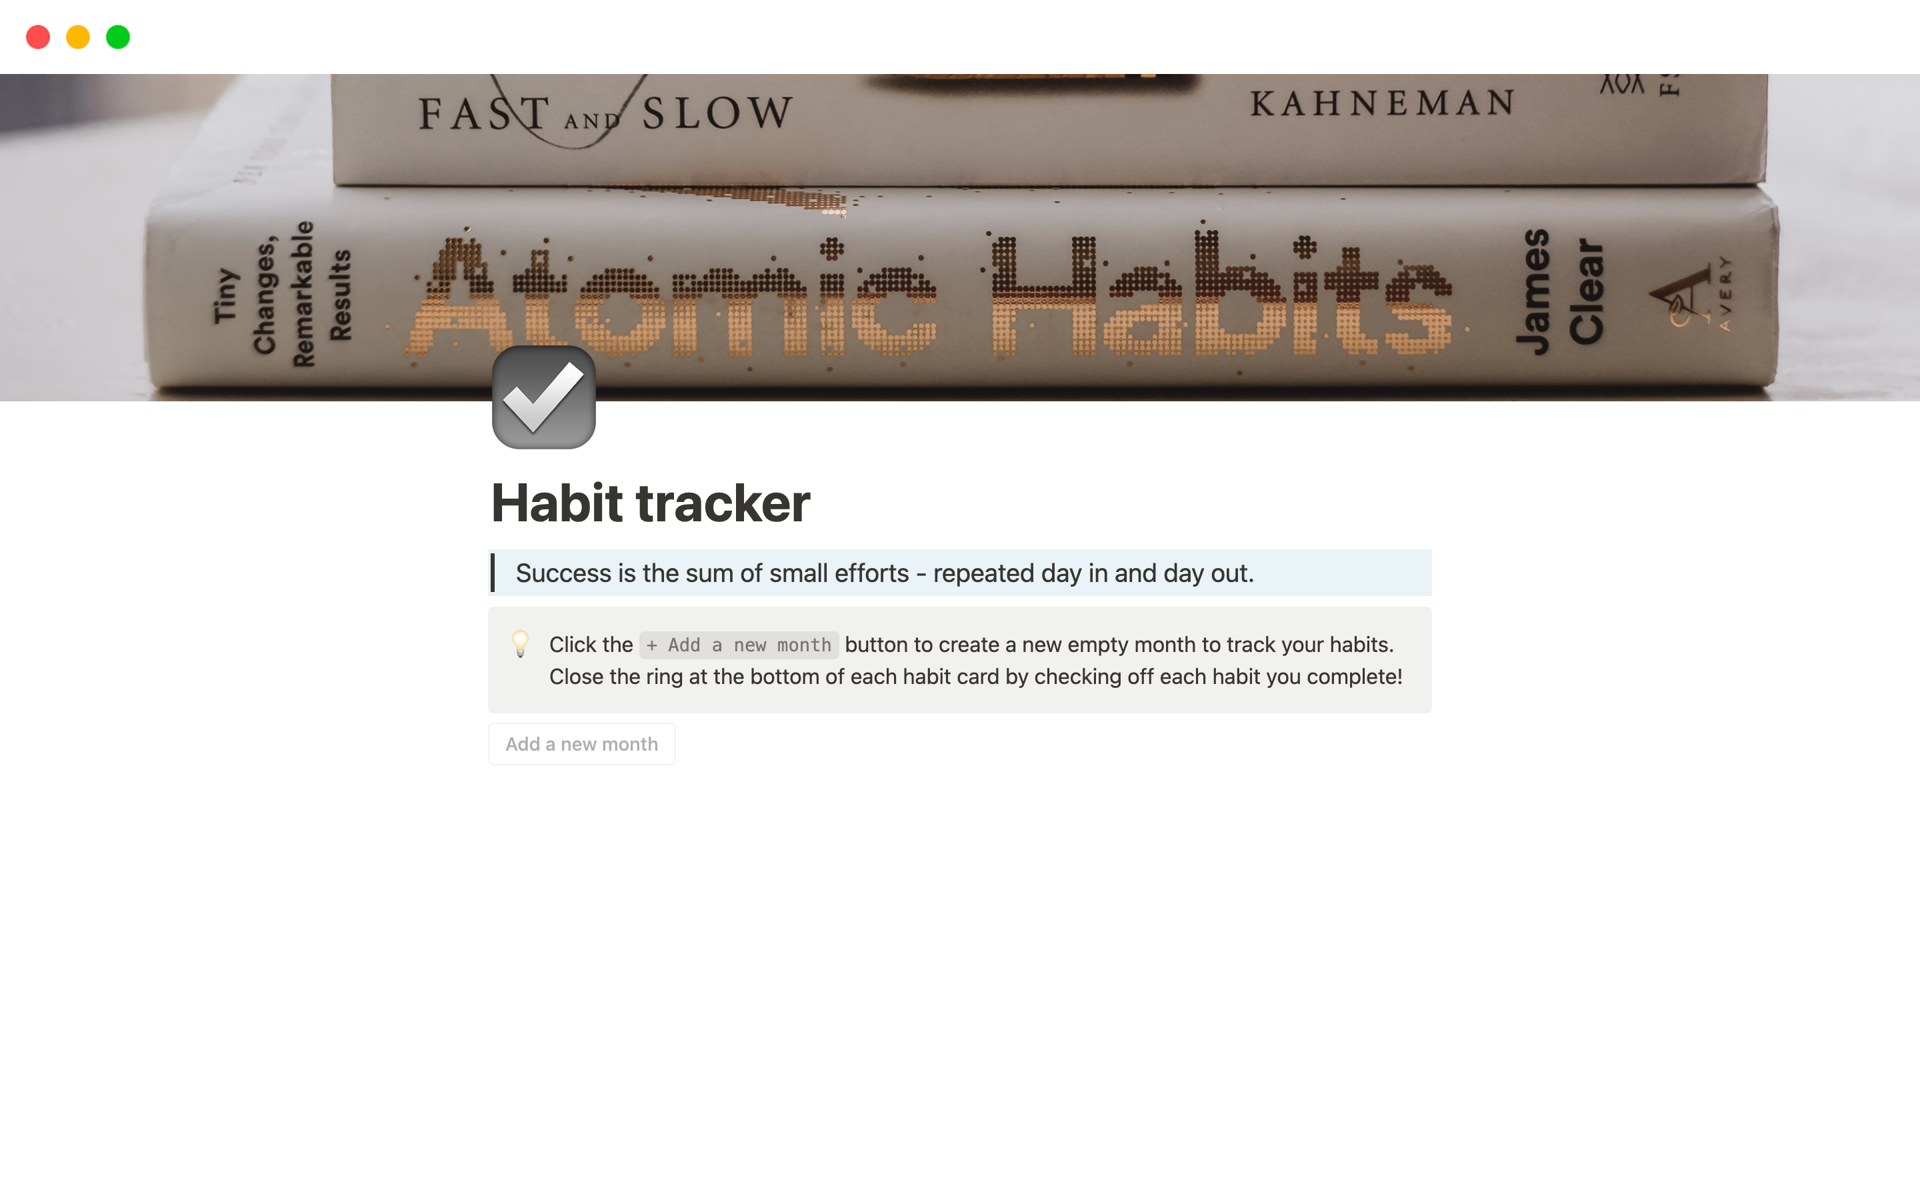 Vista previa de una plantilla para Habit tracker